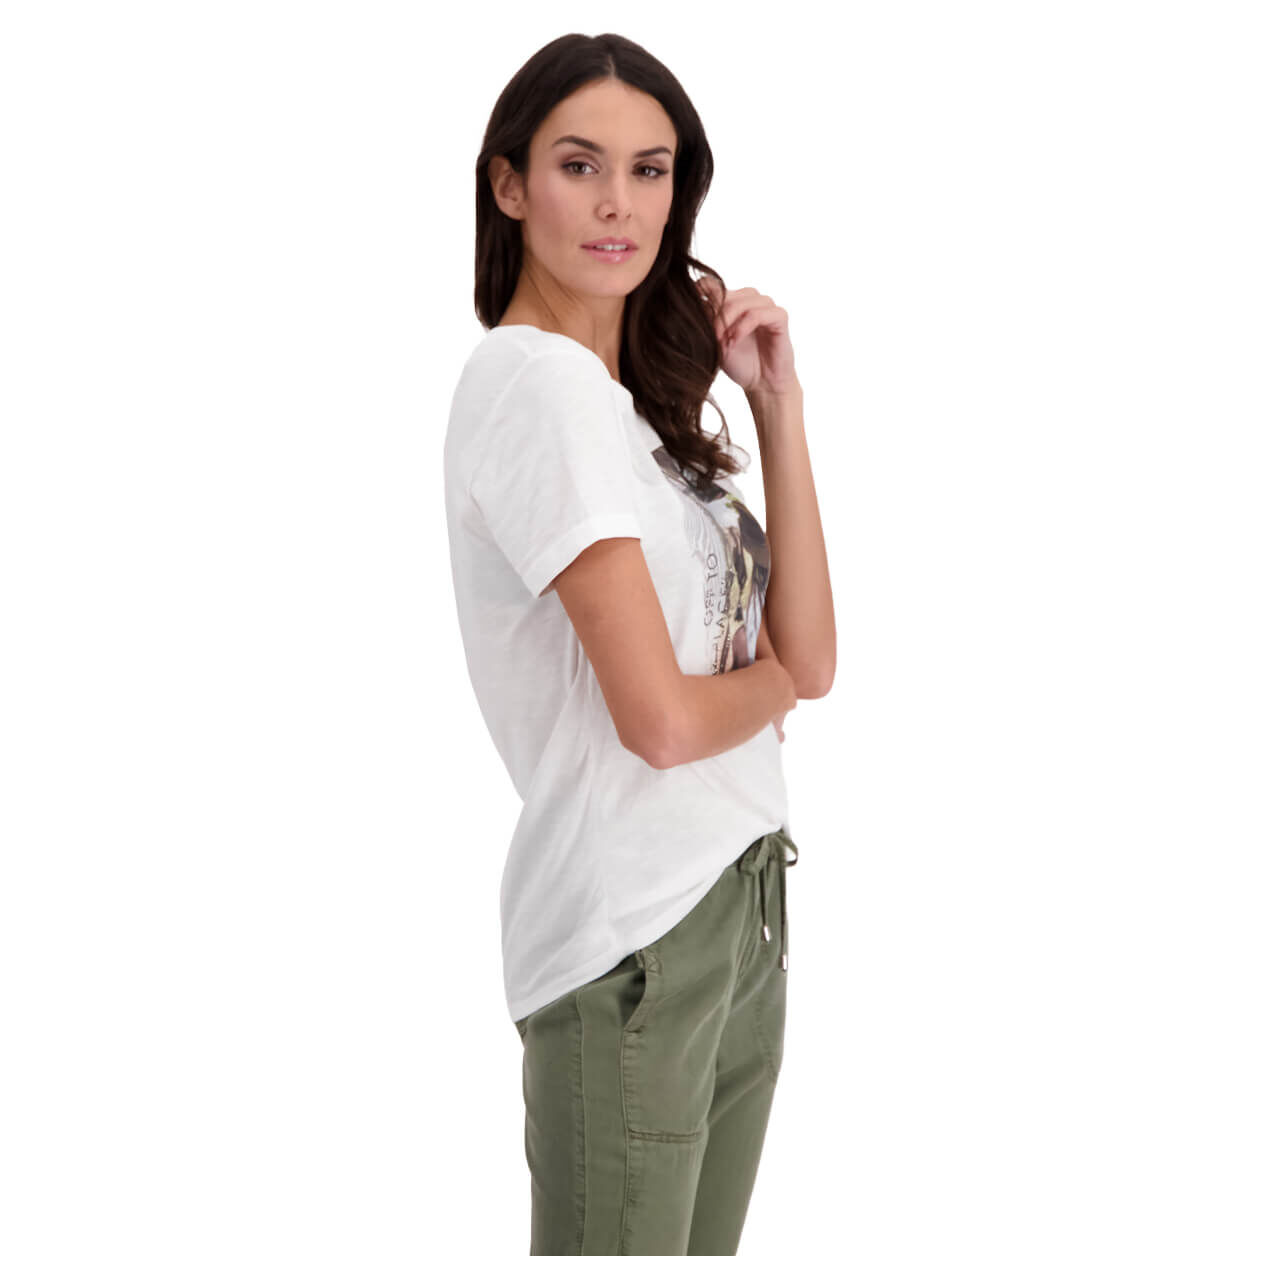 Monari T-Shirt für Damen in Weiß mit Print, FarbNr.: 100